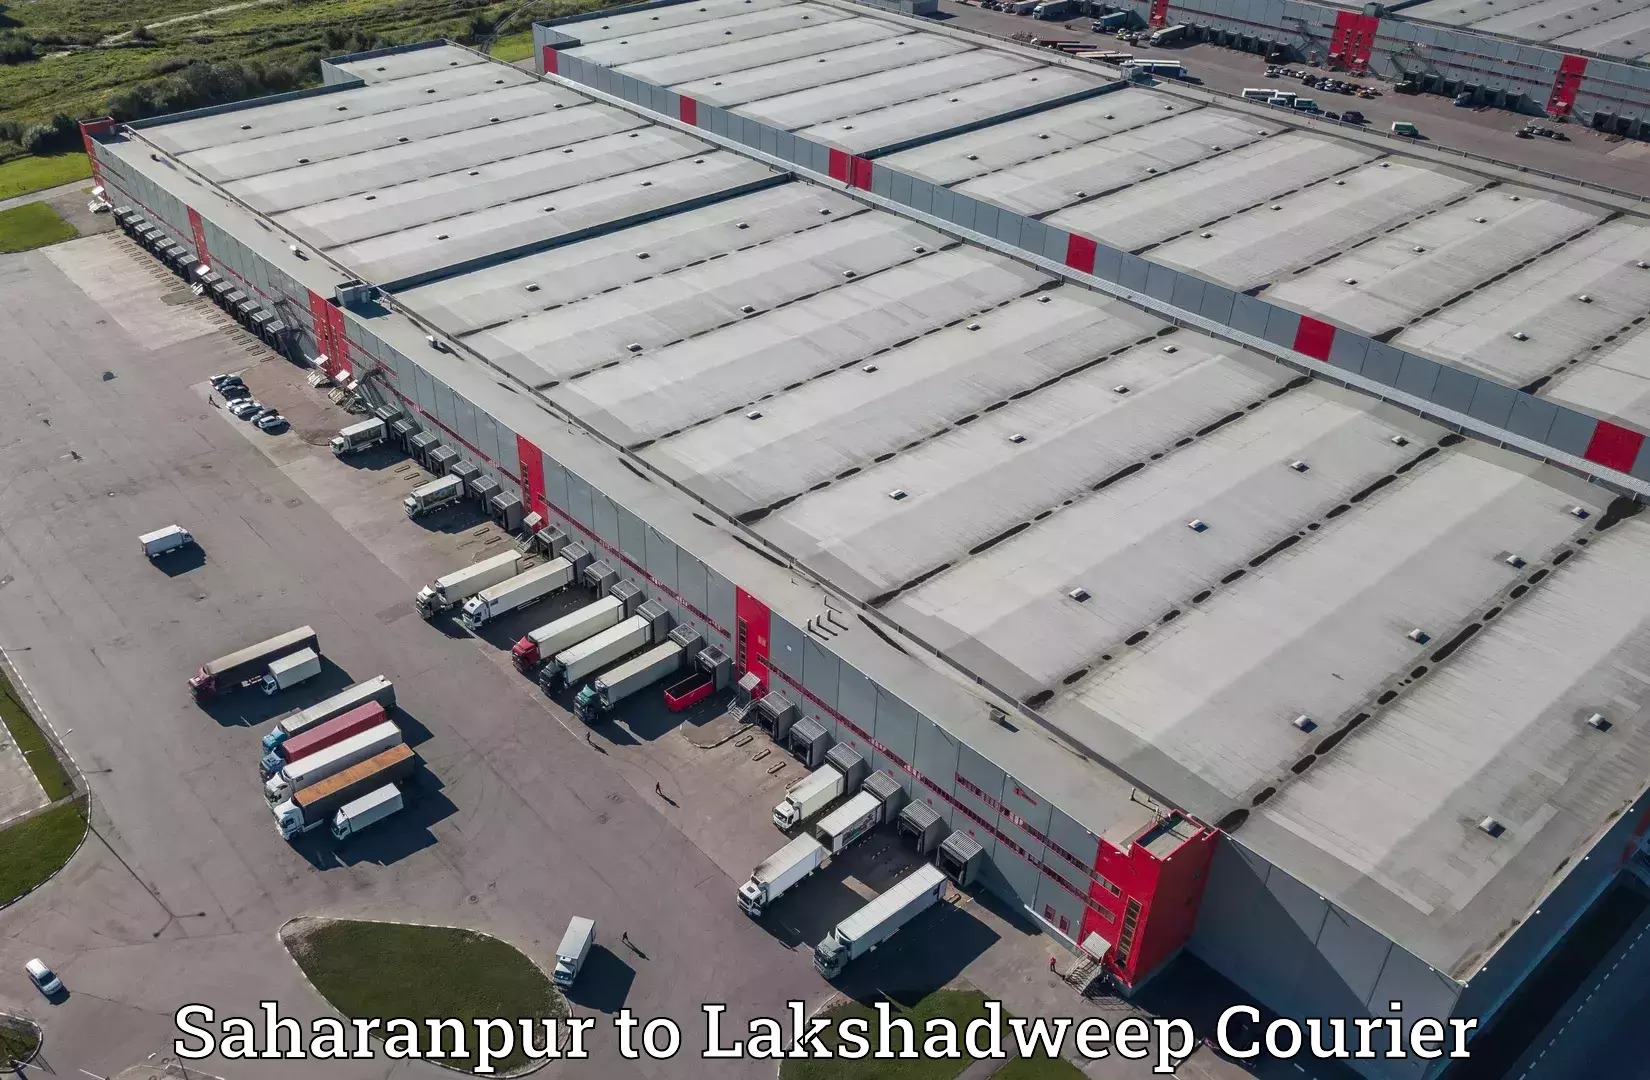 Express logistics service Saharanpur to Lakshadweep